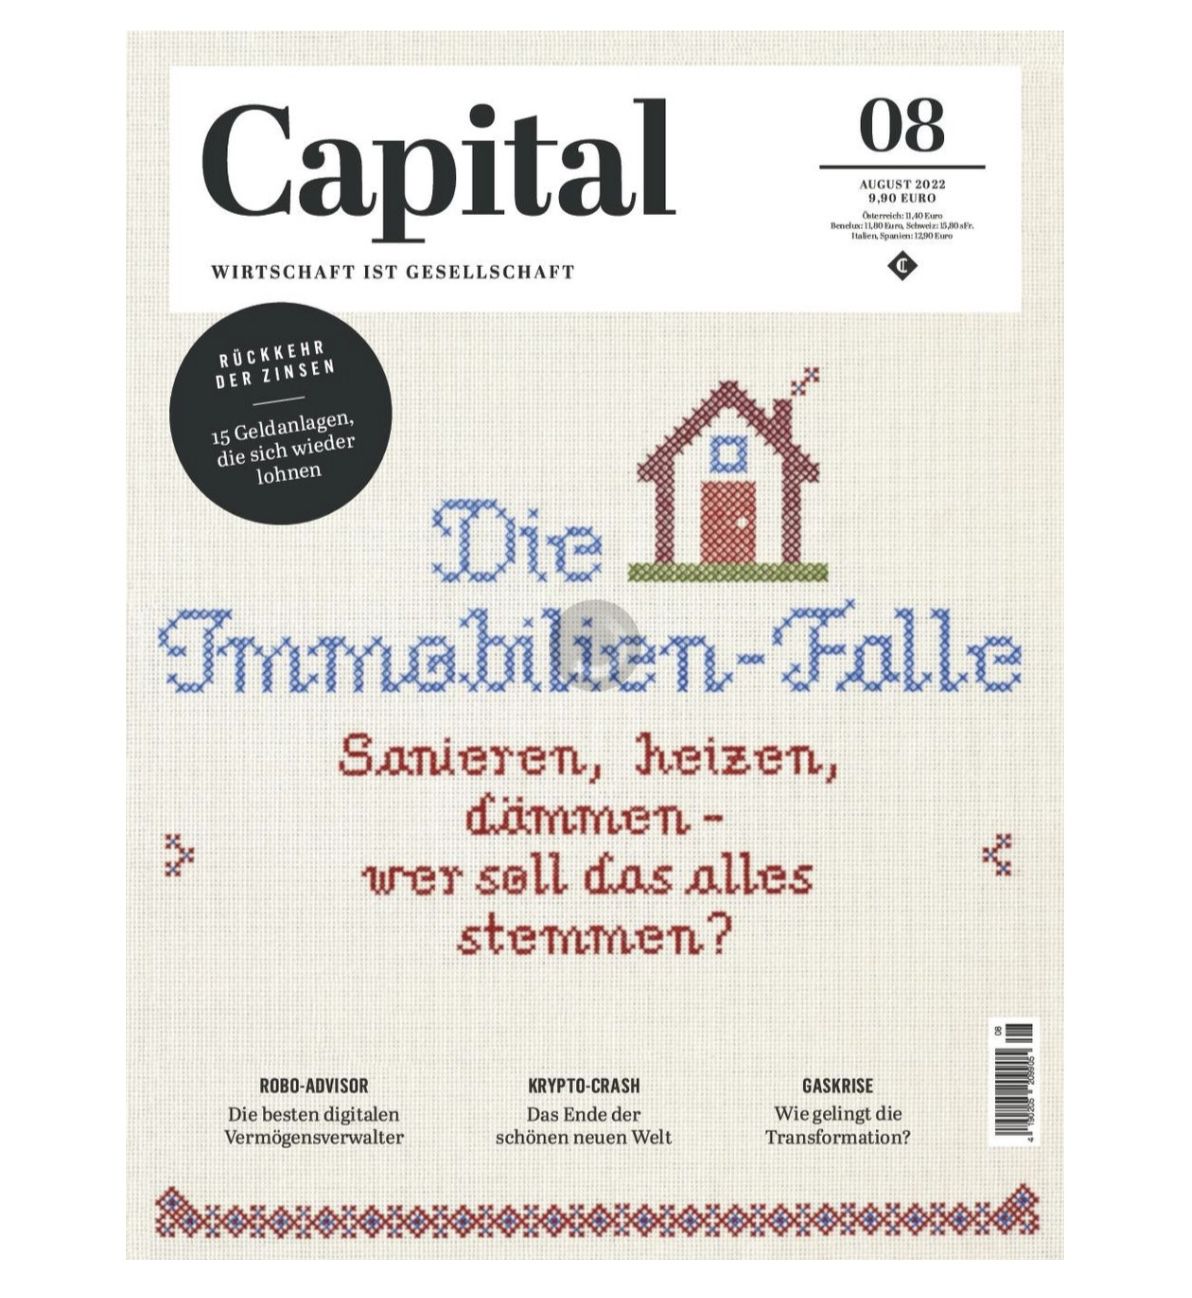 12 Ausgaben der Finanz-Zeitschrift CAPITAL für 118,80€ + Prämie z.B. 90€ Amazon